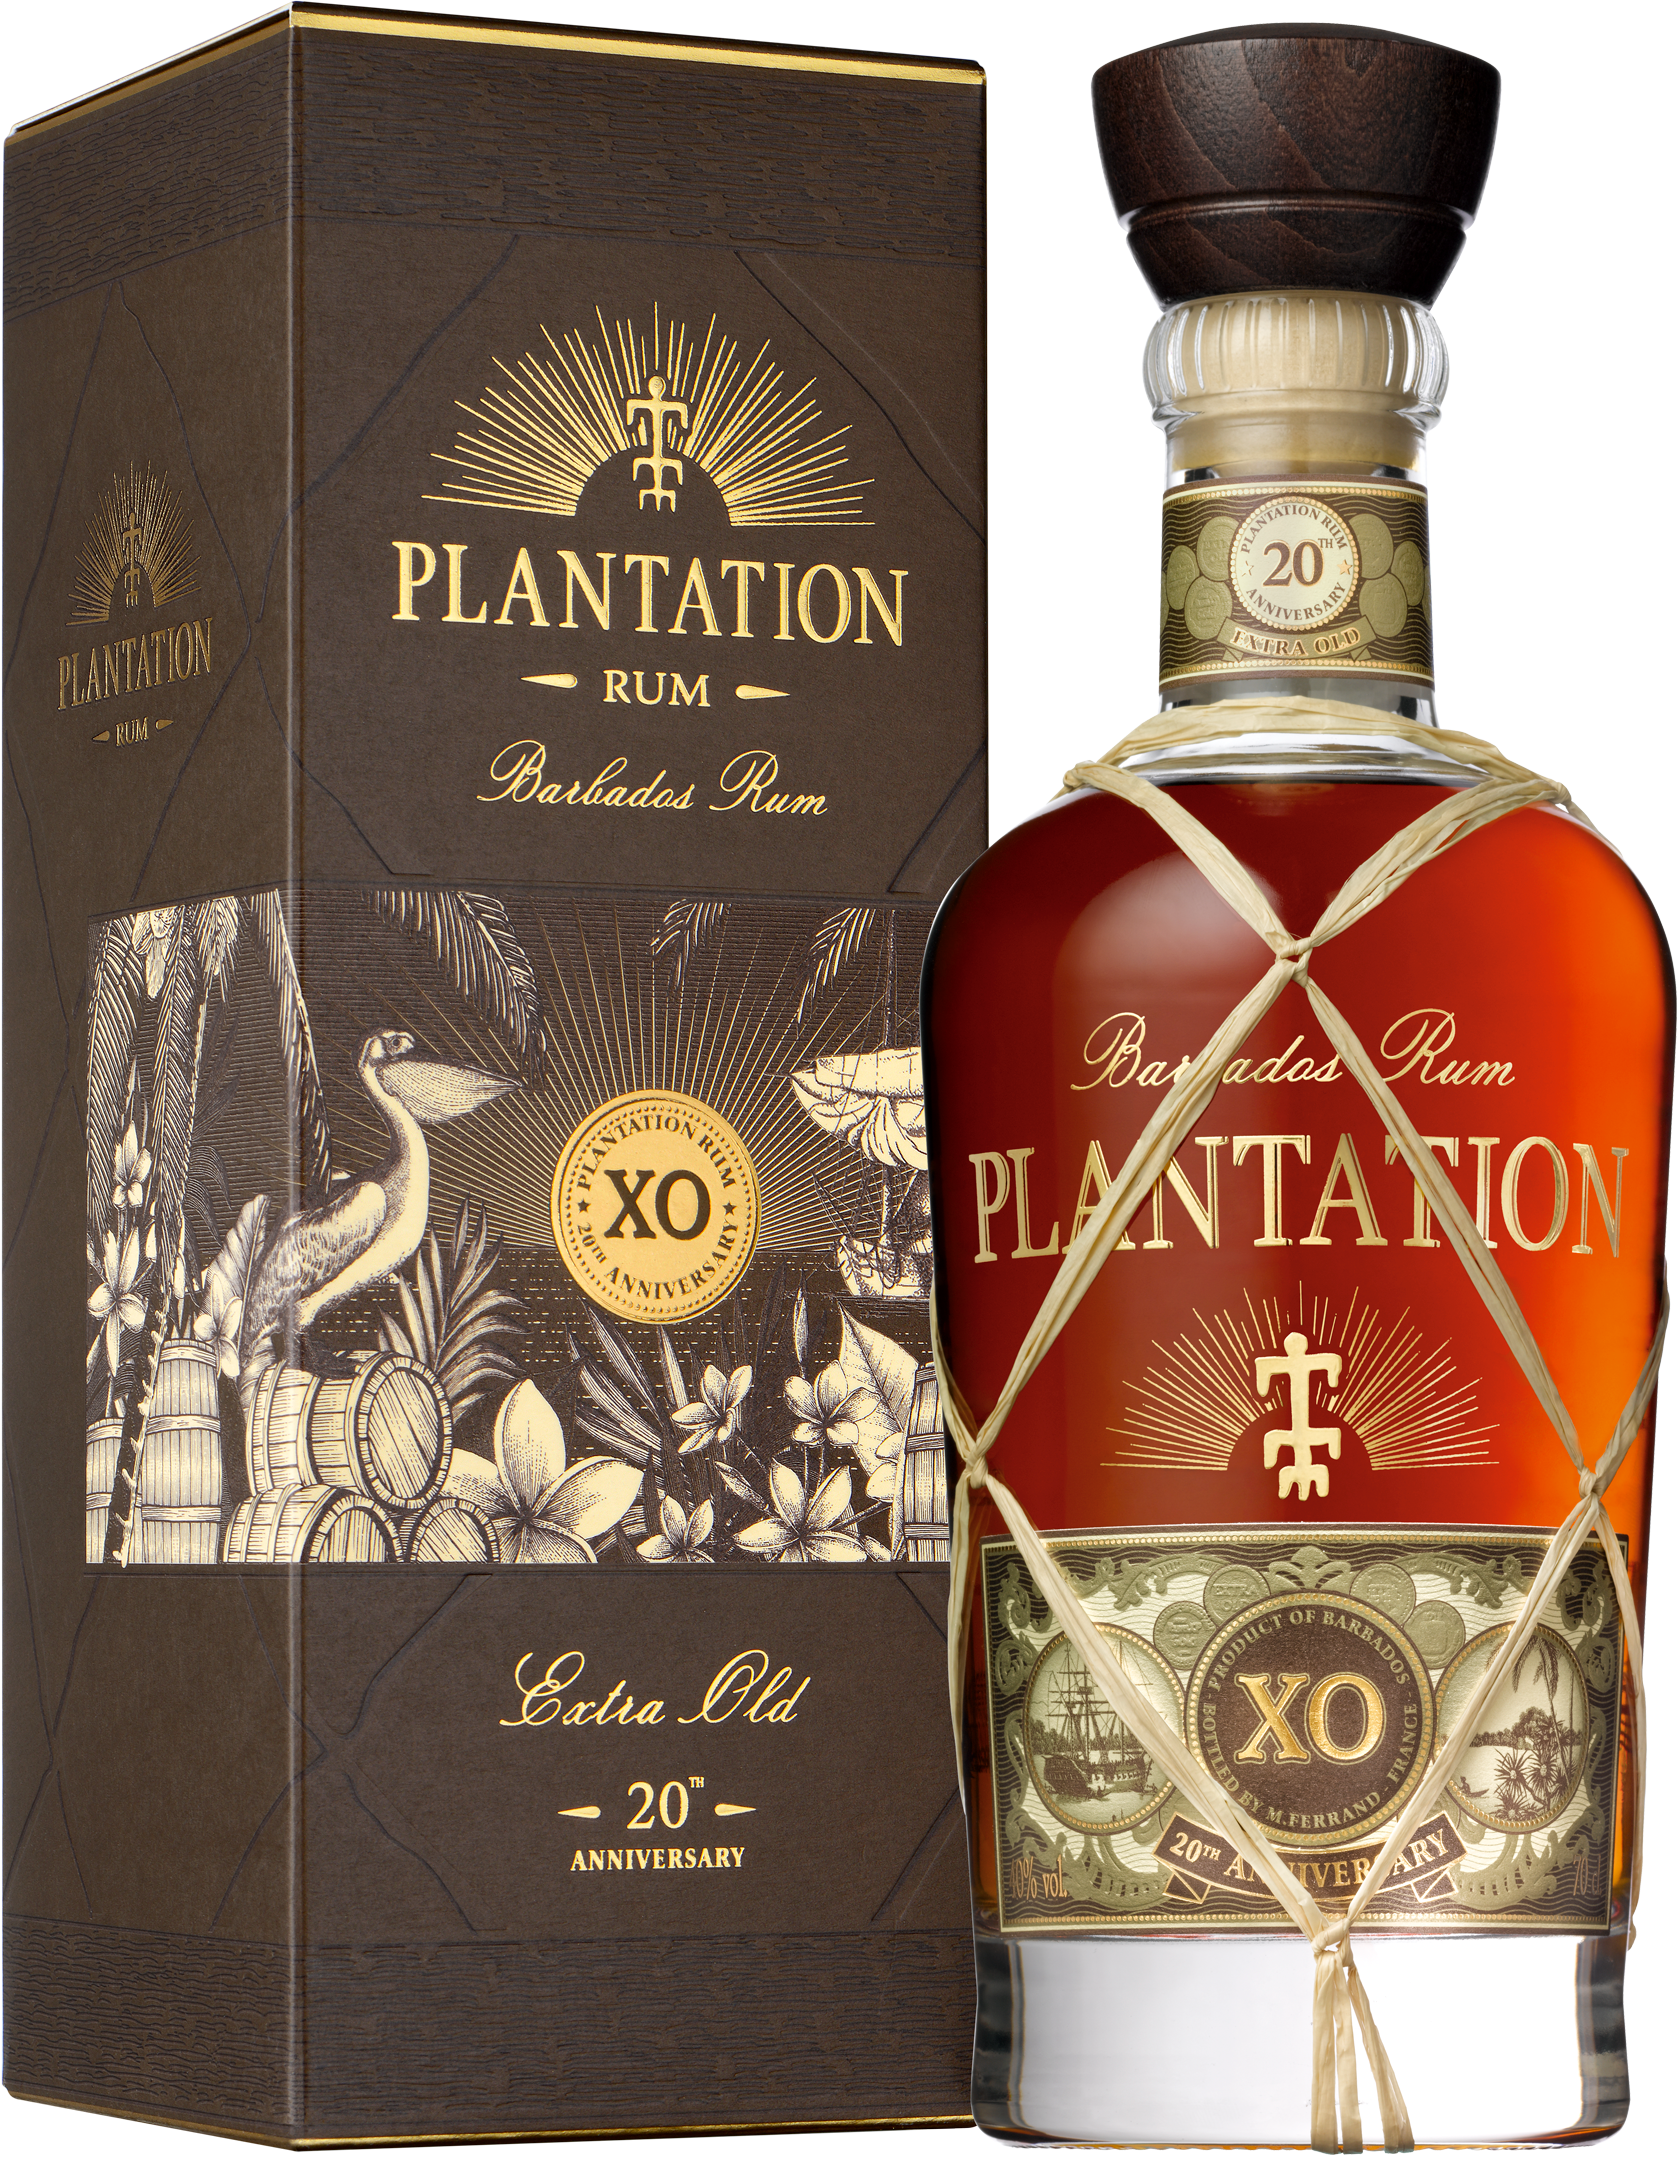 Plantation Rum Barbados XO 20th Anniversary Rum 40% 0,7l + Plantation Rum Barbados XO 20th Anniversary Rum 40% 0,1l